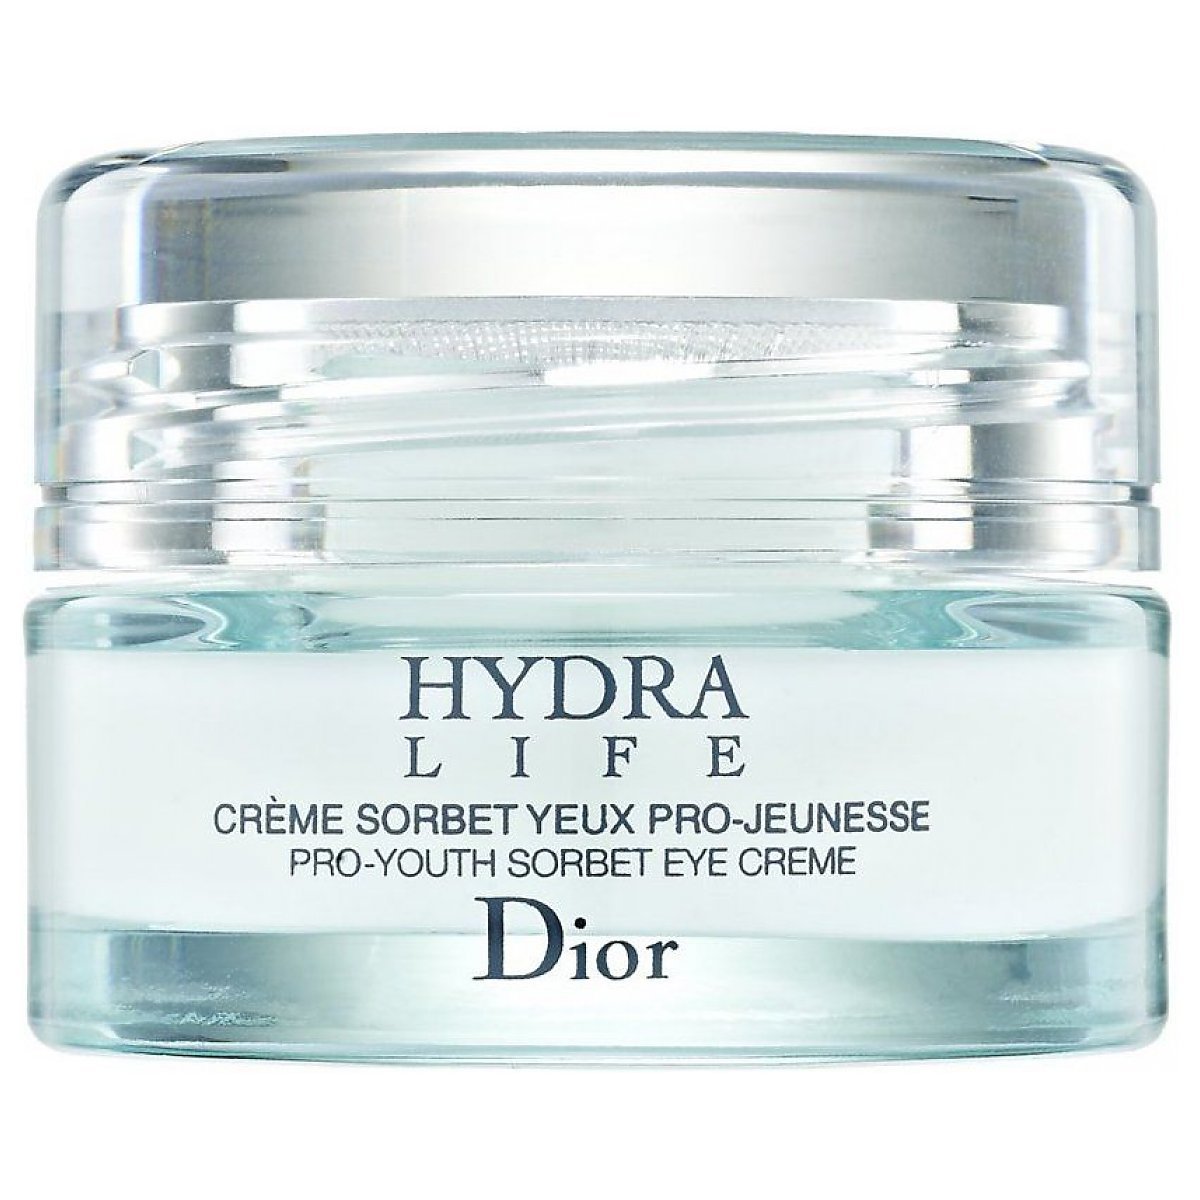 Dior hydra life creme отзывы запустить флеш на тор браузер гидра